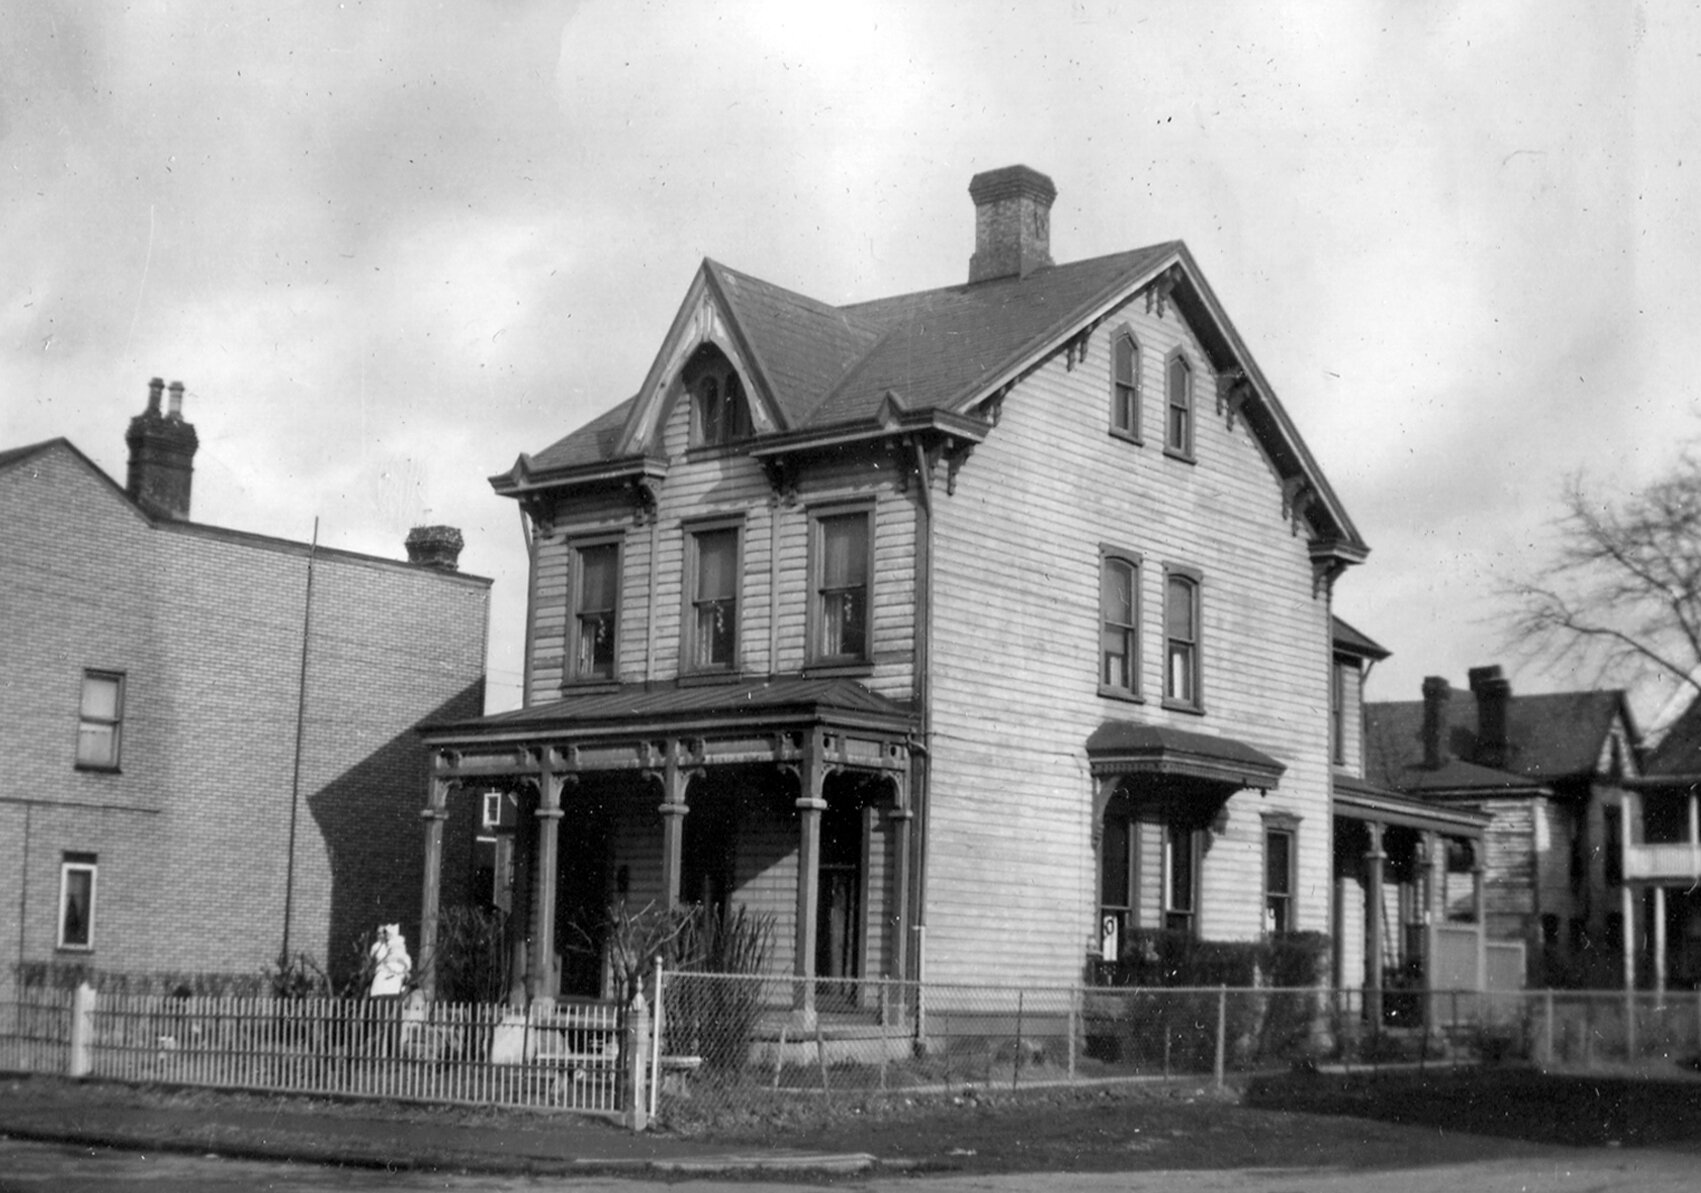 Tony's House circa 1950